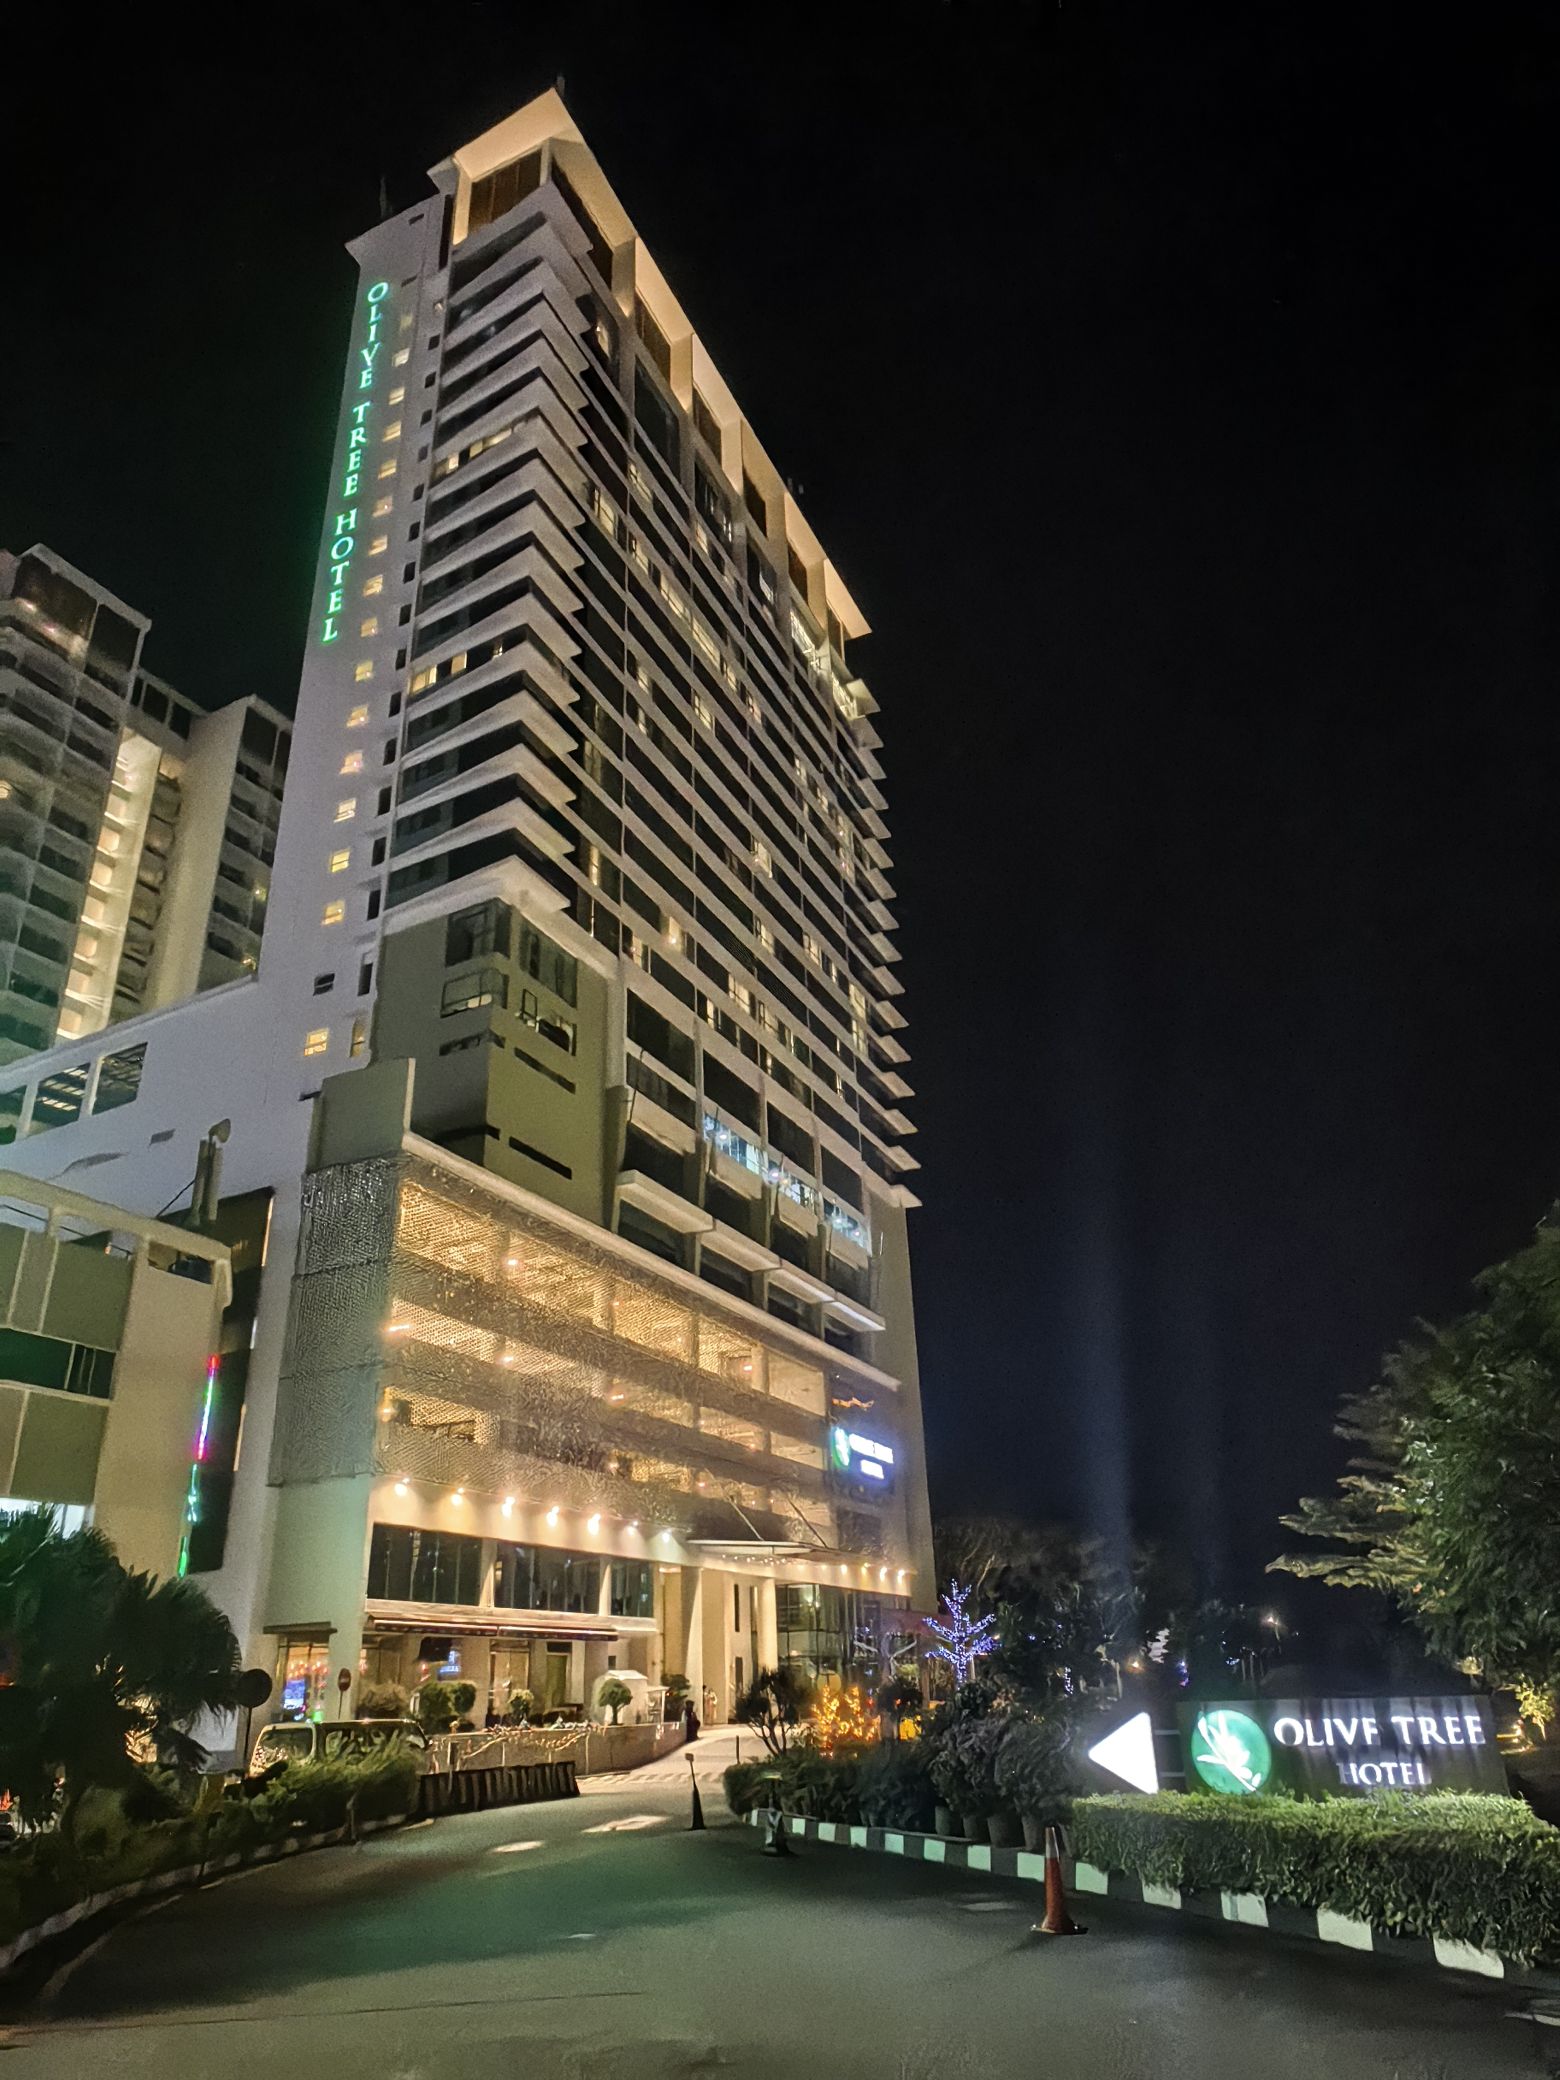 酒店距槟城机场比较近，周围交通便利，配套的购物中心、酒吧、餐馆也不少，闹中取静。        酒店